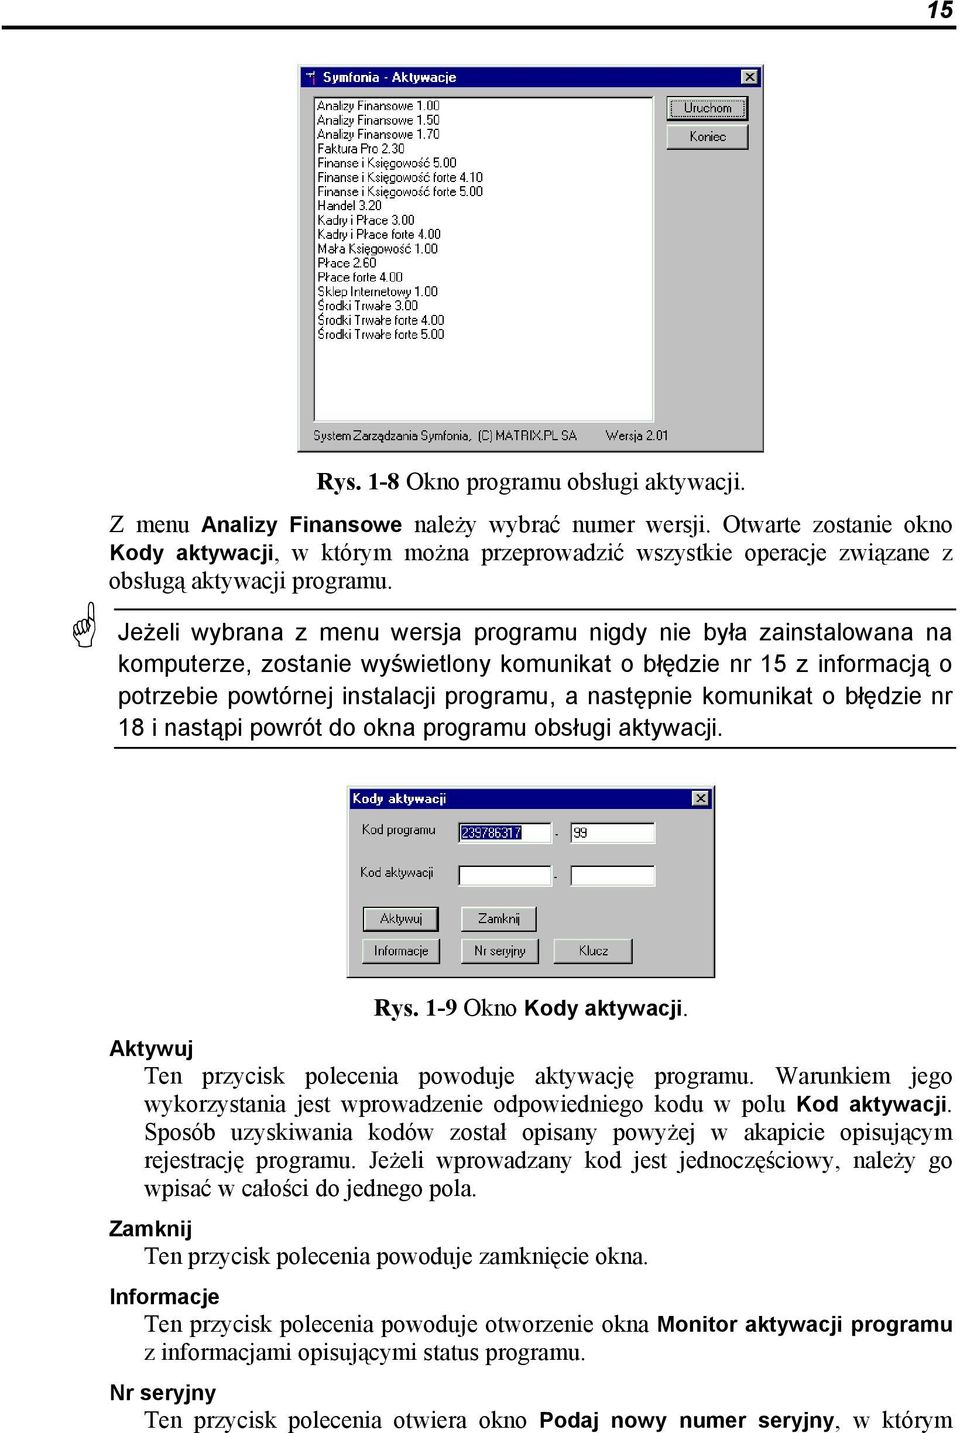 Jeżeli wybrana z menu wersja programu nigdy nie była zainstalowana na komputerze, zostanie wyświetlony komunikat o błędzie nr 15 z informacją o potrzebie powtórnej instalacji programu, a następnie